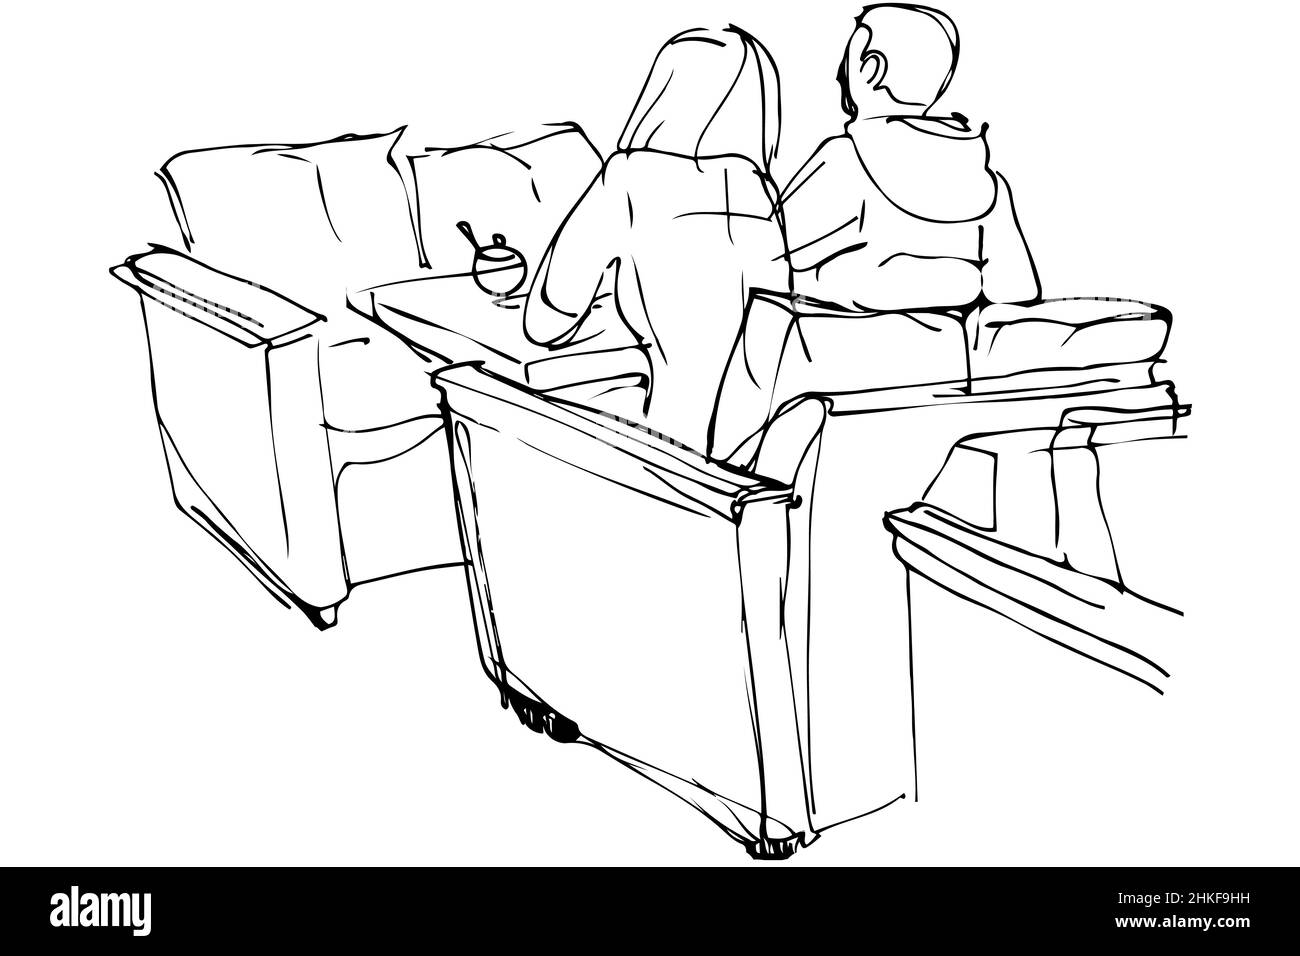 dessin vectoriel noir et blanc d'un homme et d'une femme assis sur un canapé dans un café Banque D'Images